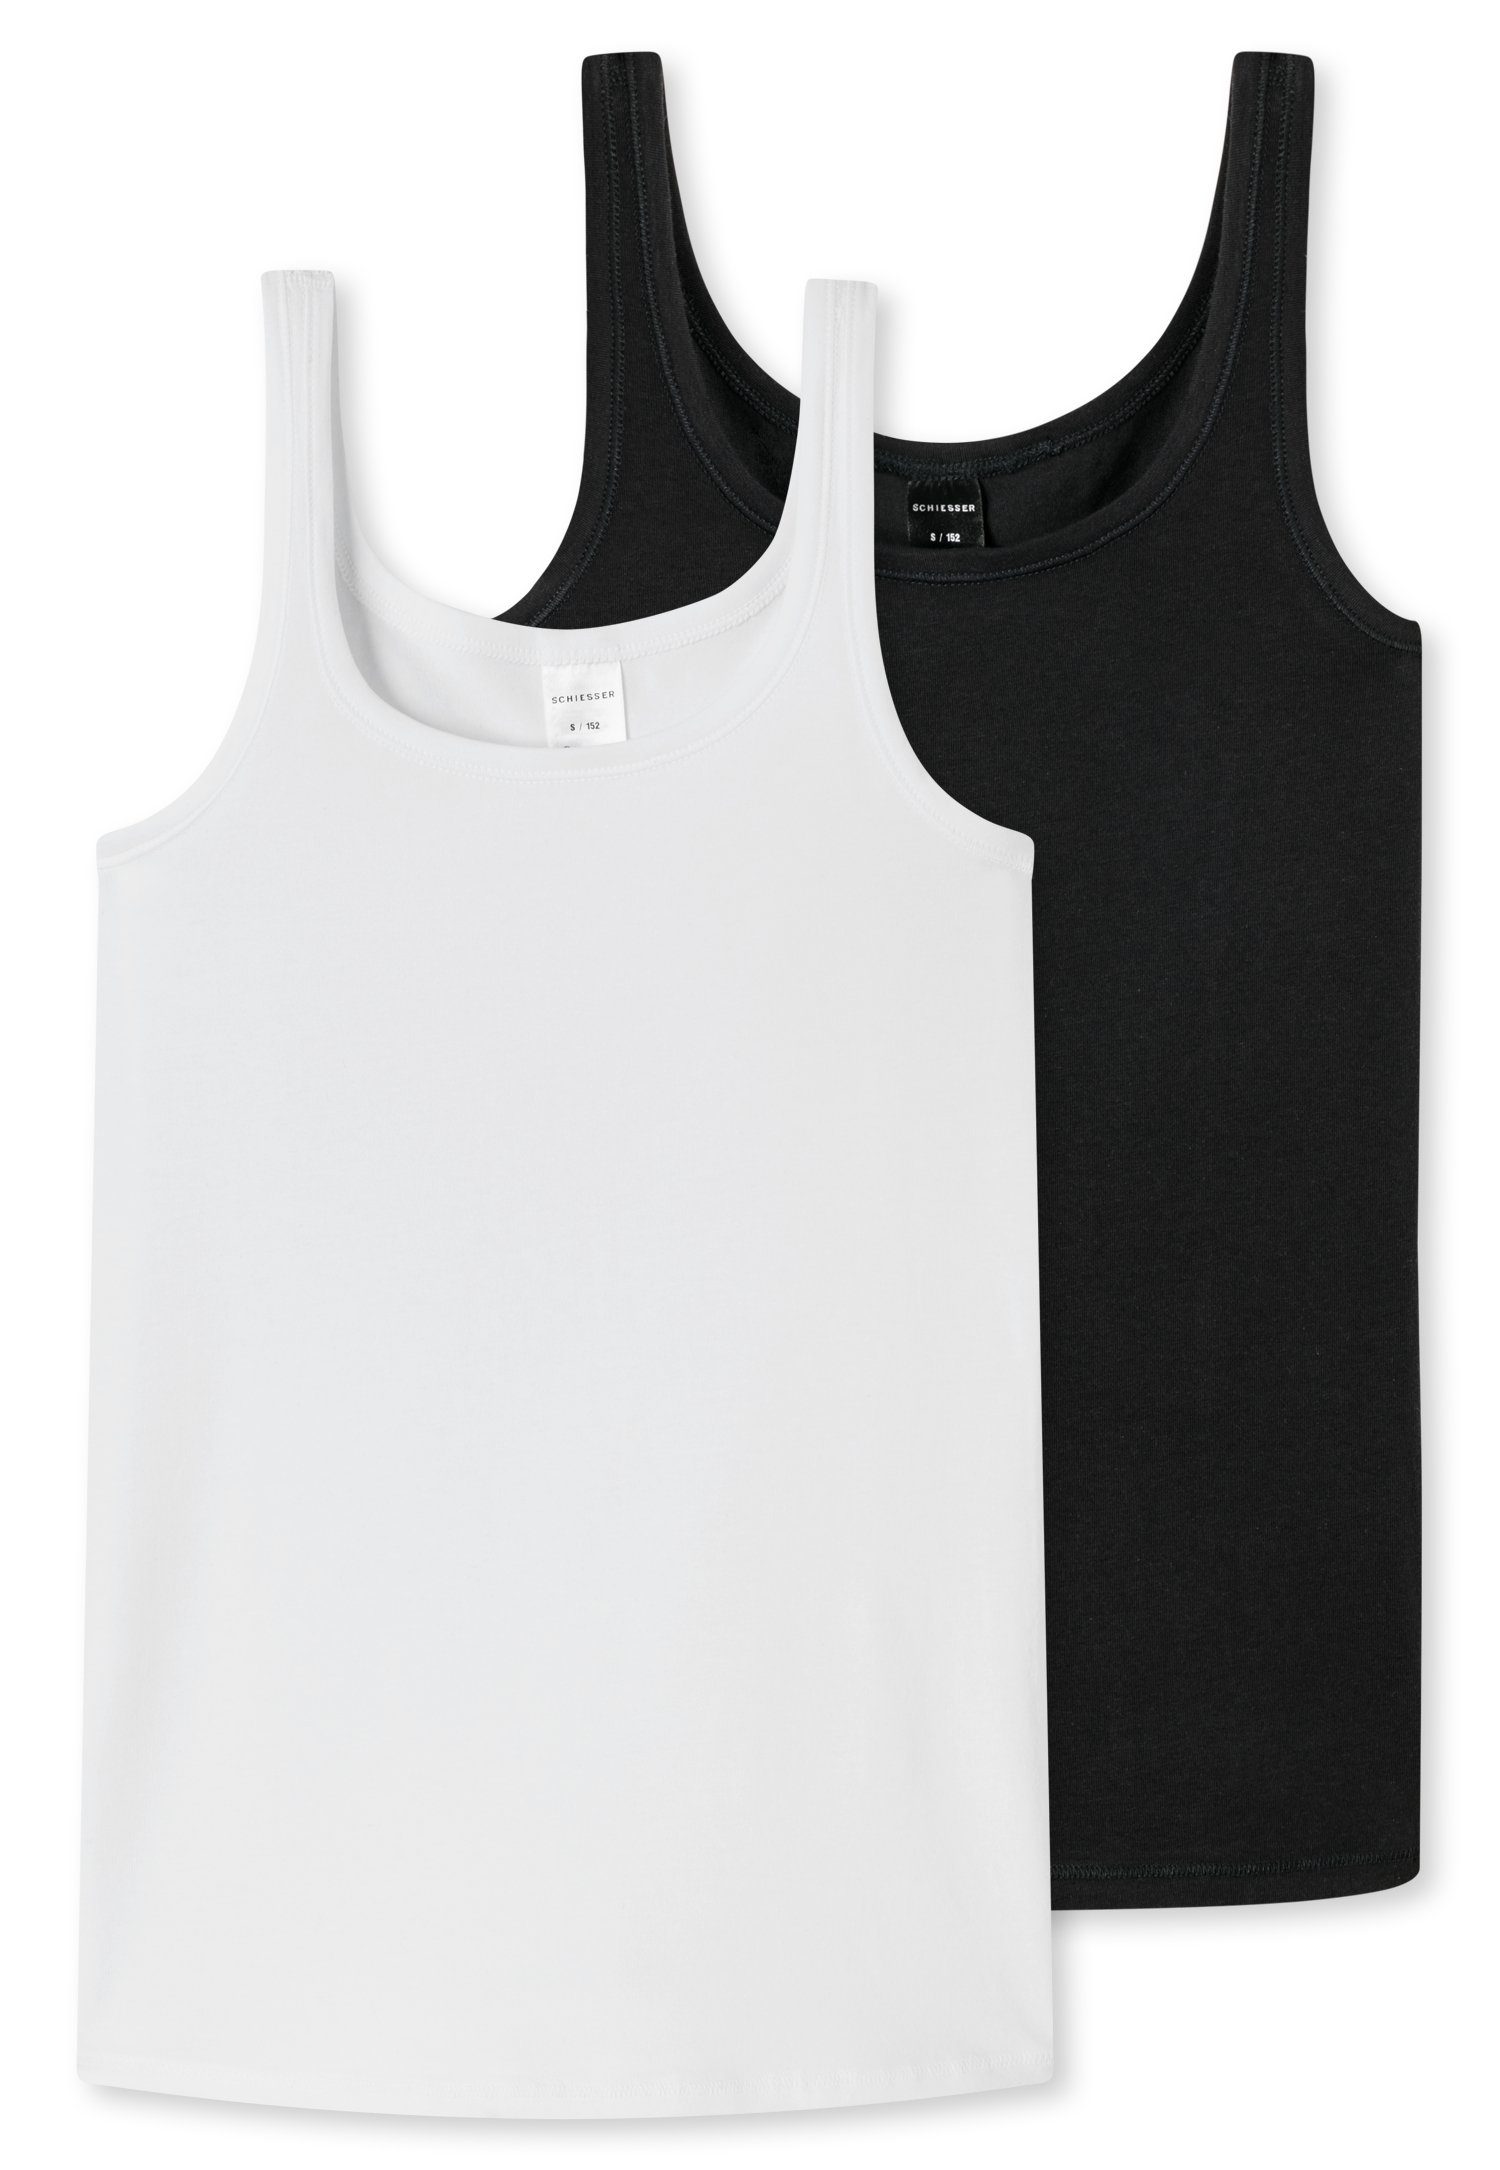 Schiesser Unterhemd (2er-Pack) mit breiten Trägern schwarz/weiß | Tanktops